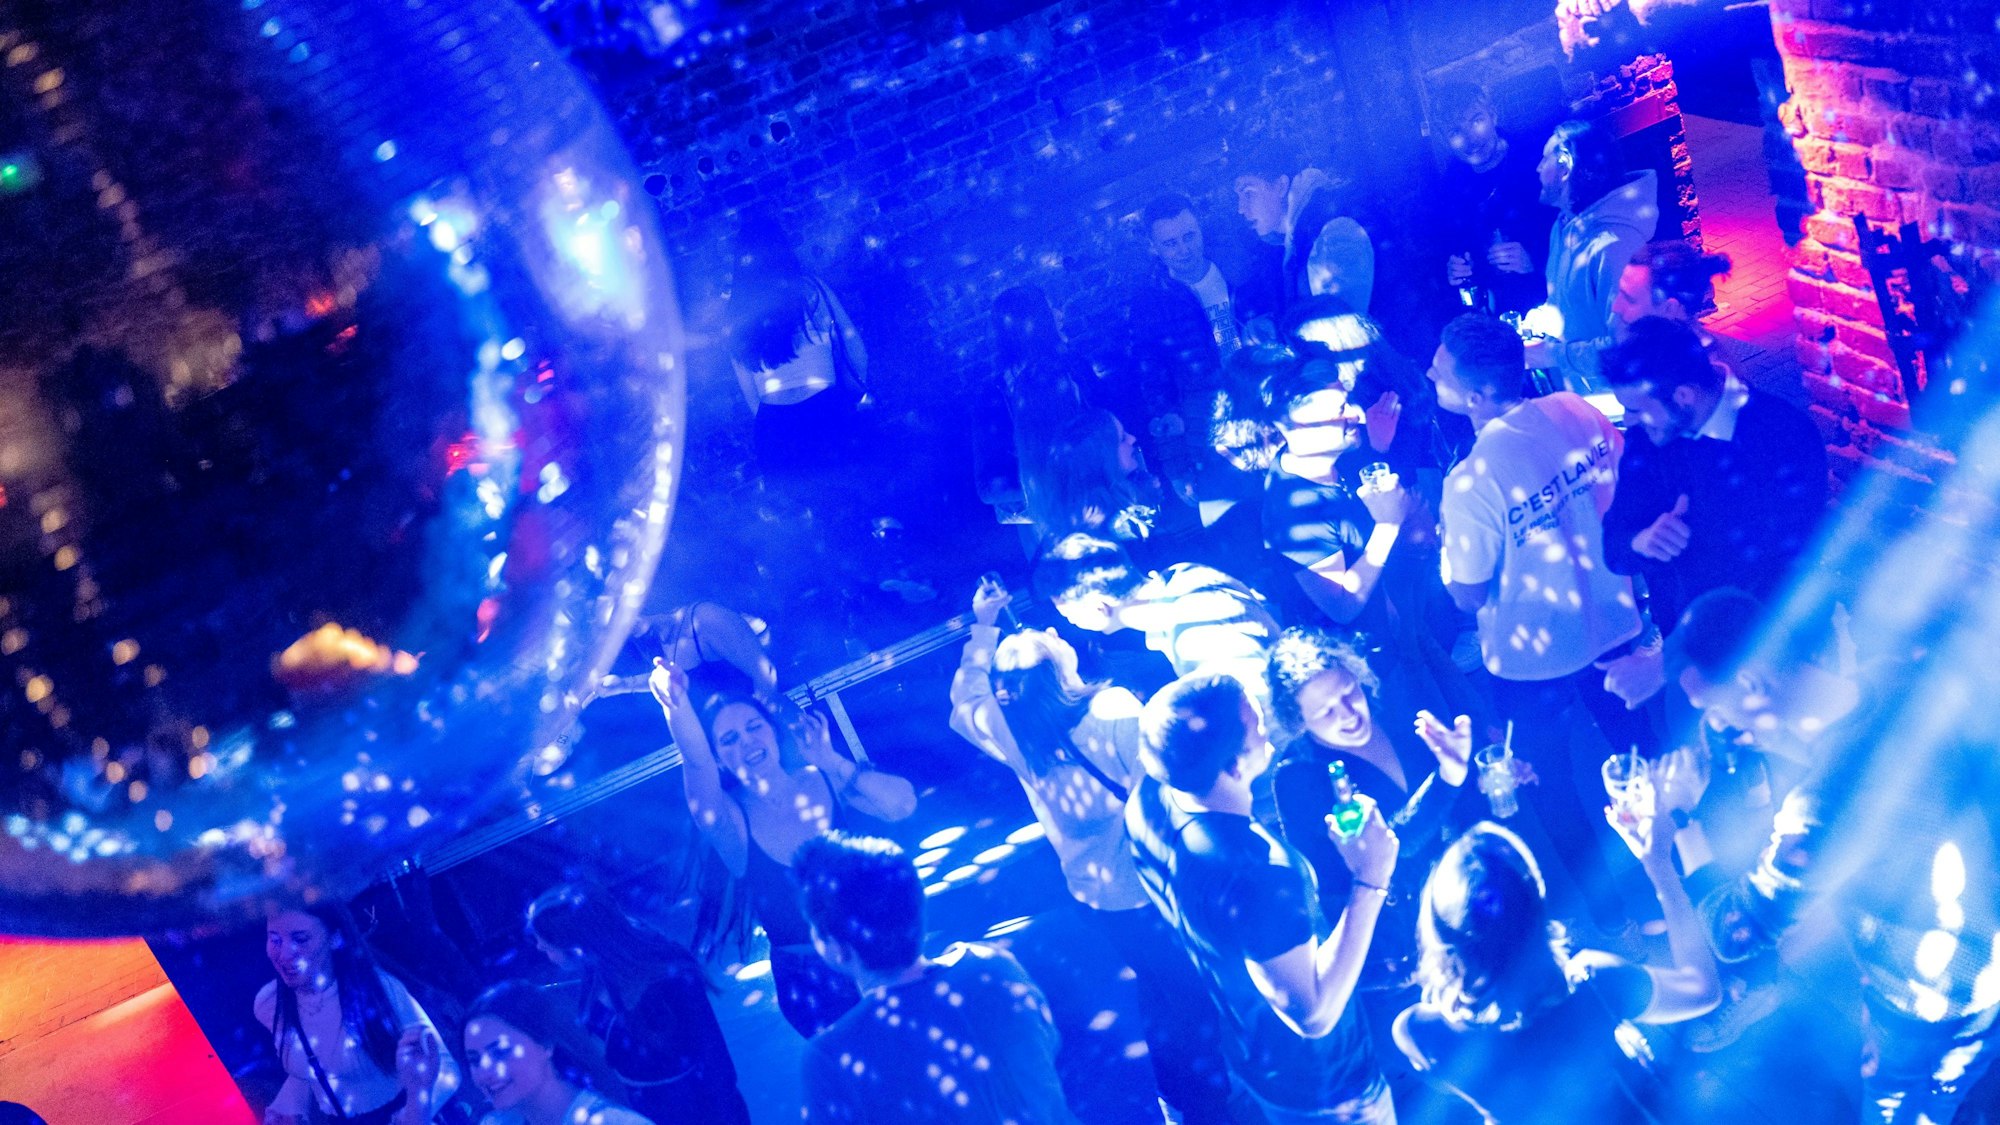 Junge Leute feiern und tanzen bei Discobeleuchtung in einem Club.